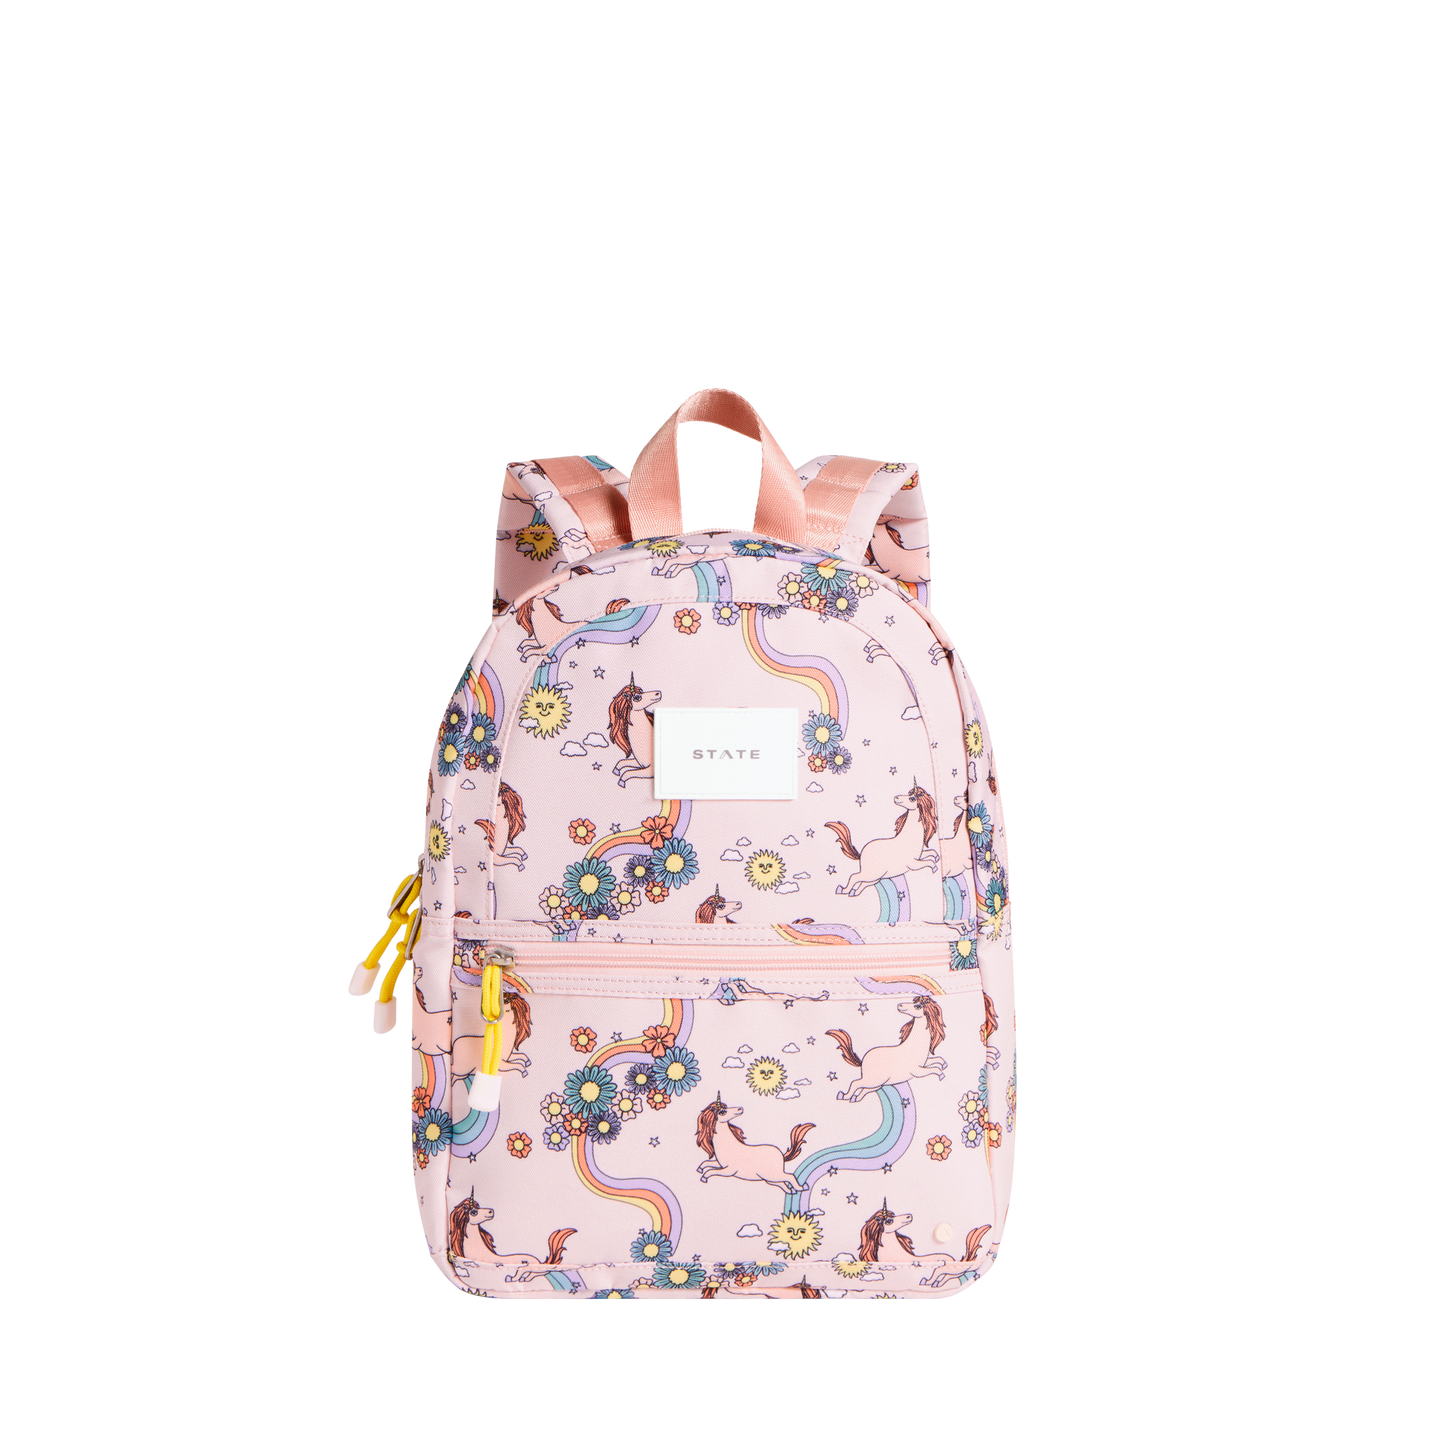 State Bags - Kane Kids Mini Backpacks